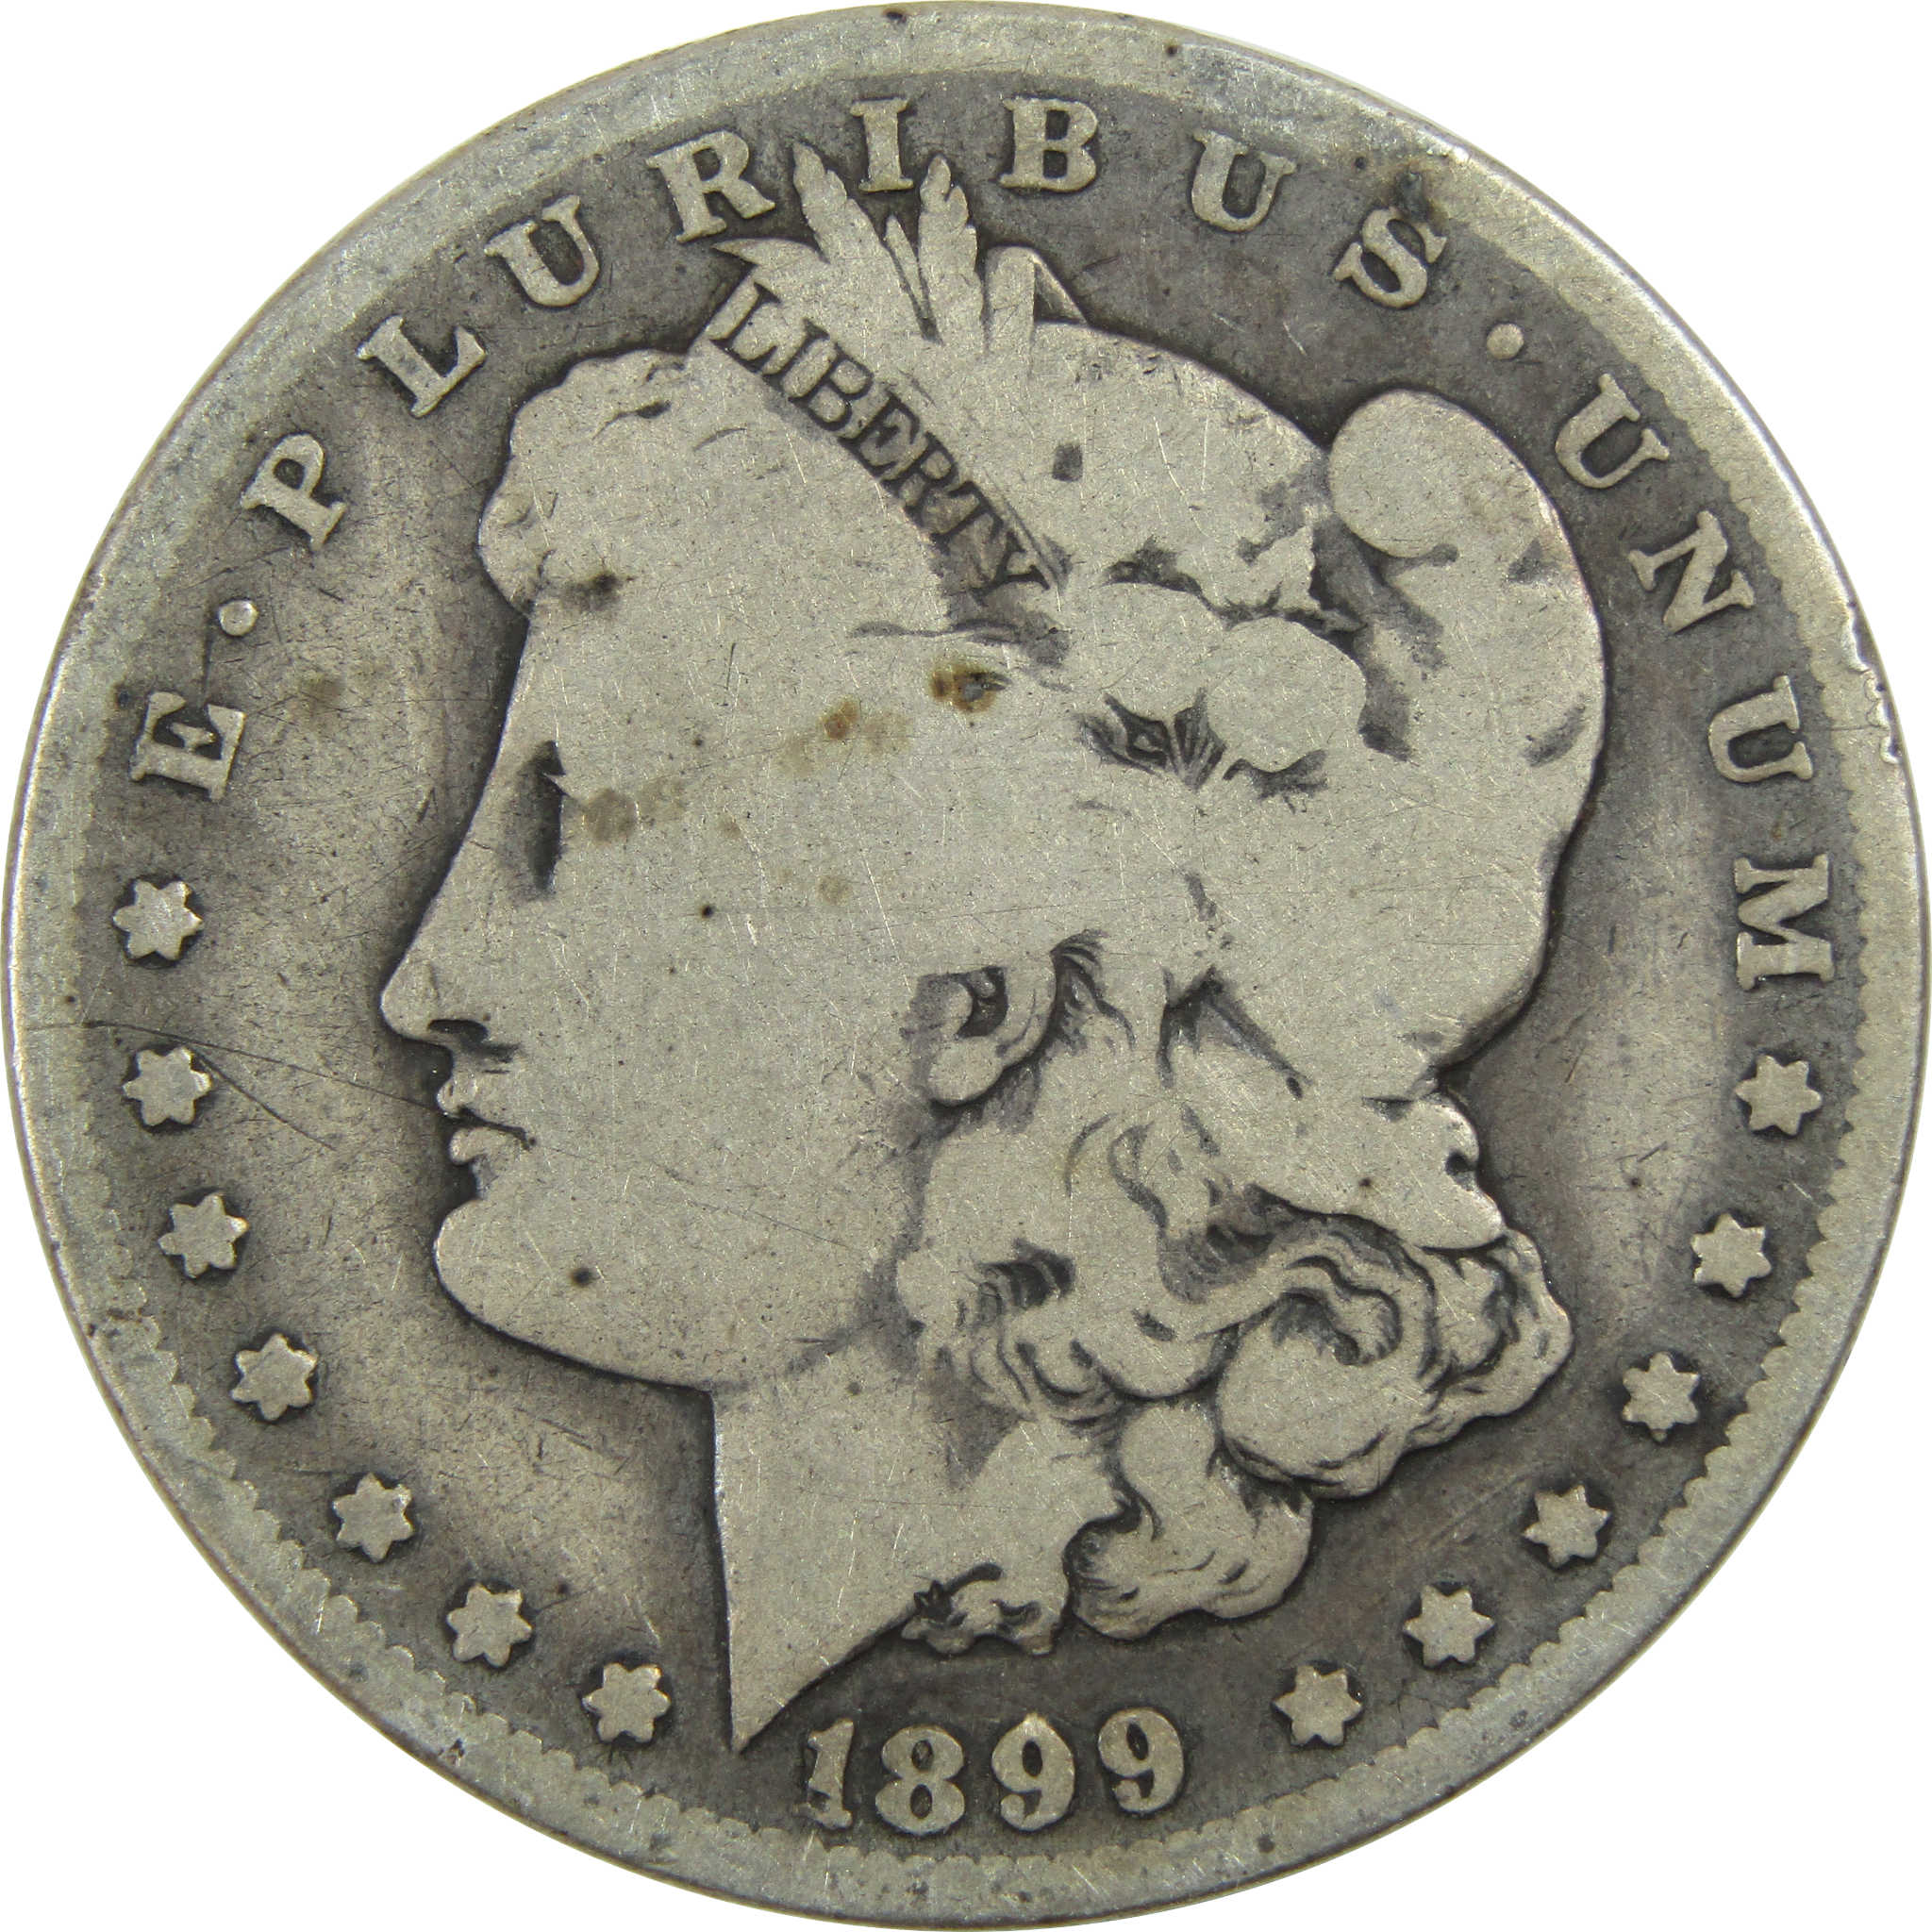 1899 O Micro O Morgan Dollar G Good Silver $1 Coin SKU:I13603 - Morgan coin - Morgan silver dollar - Morgan silver dollar for sale - Profile Coins &amp; Collectibles